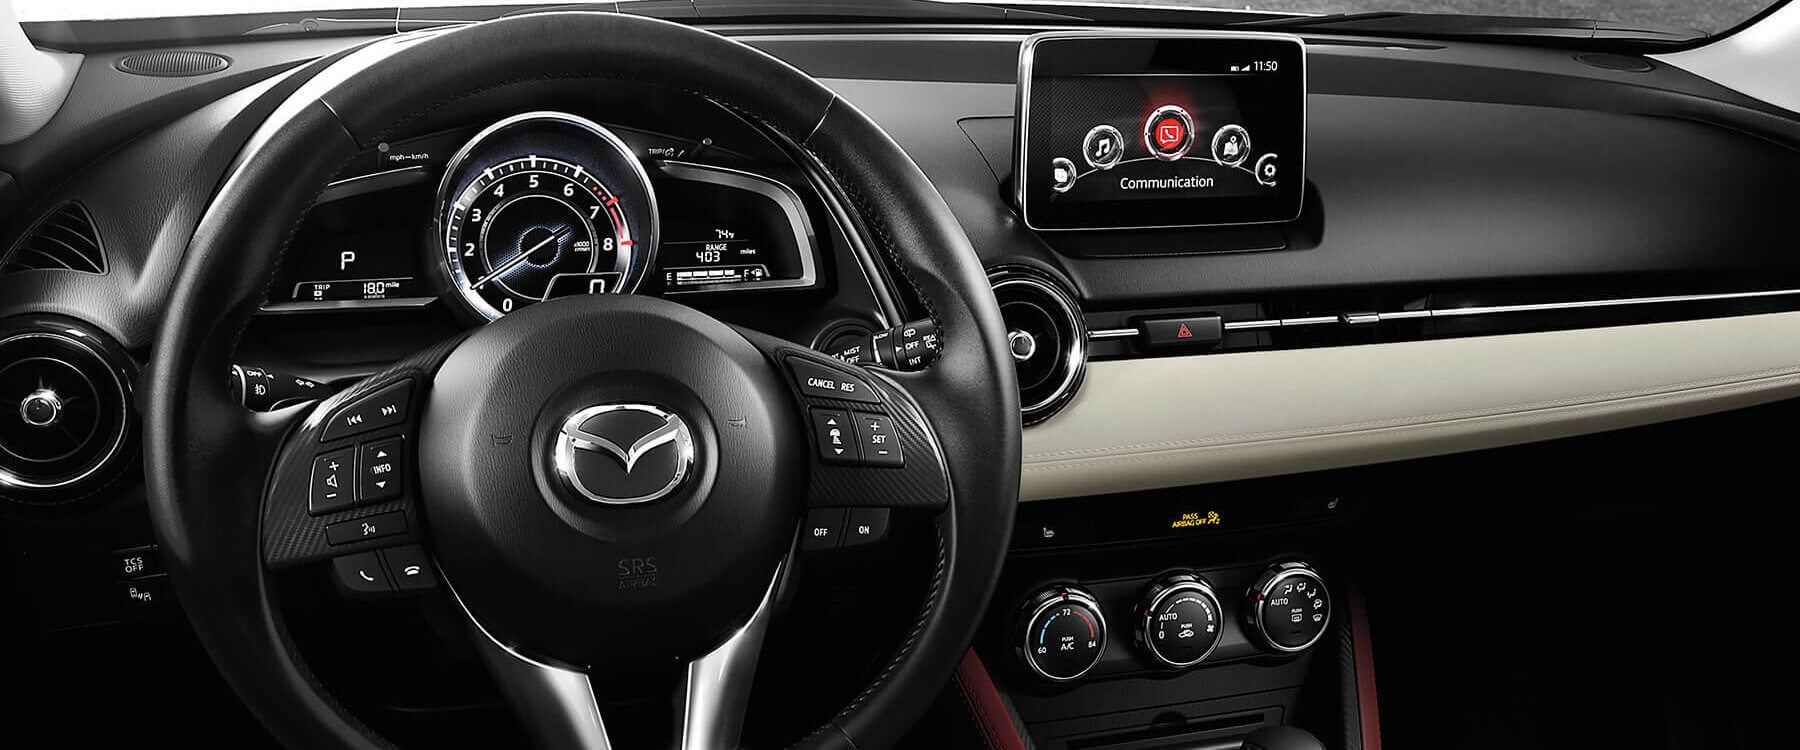 Tầm giá 700 triệu đồng: Chọn Mazda 3 hay Mazda CX3? - 5